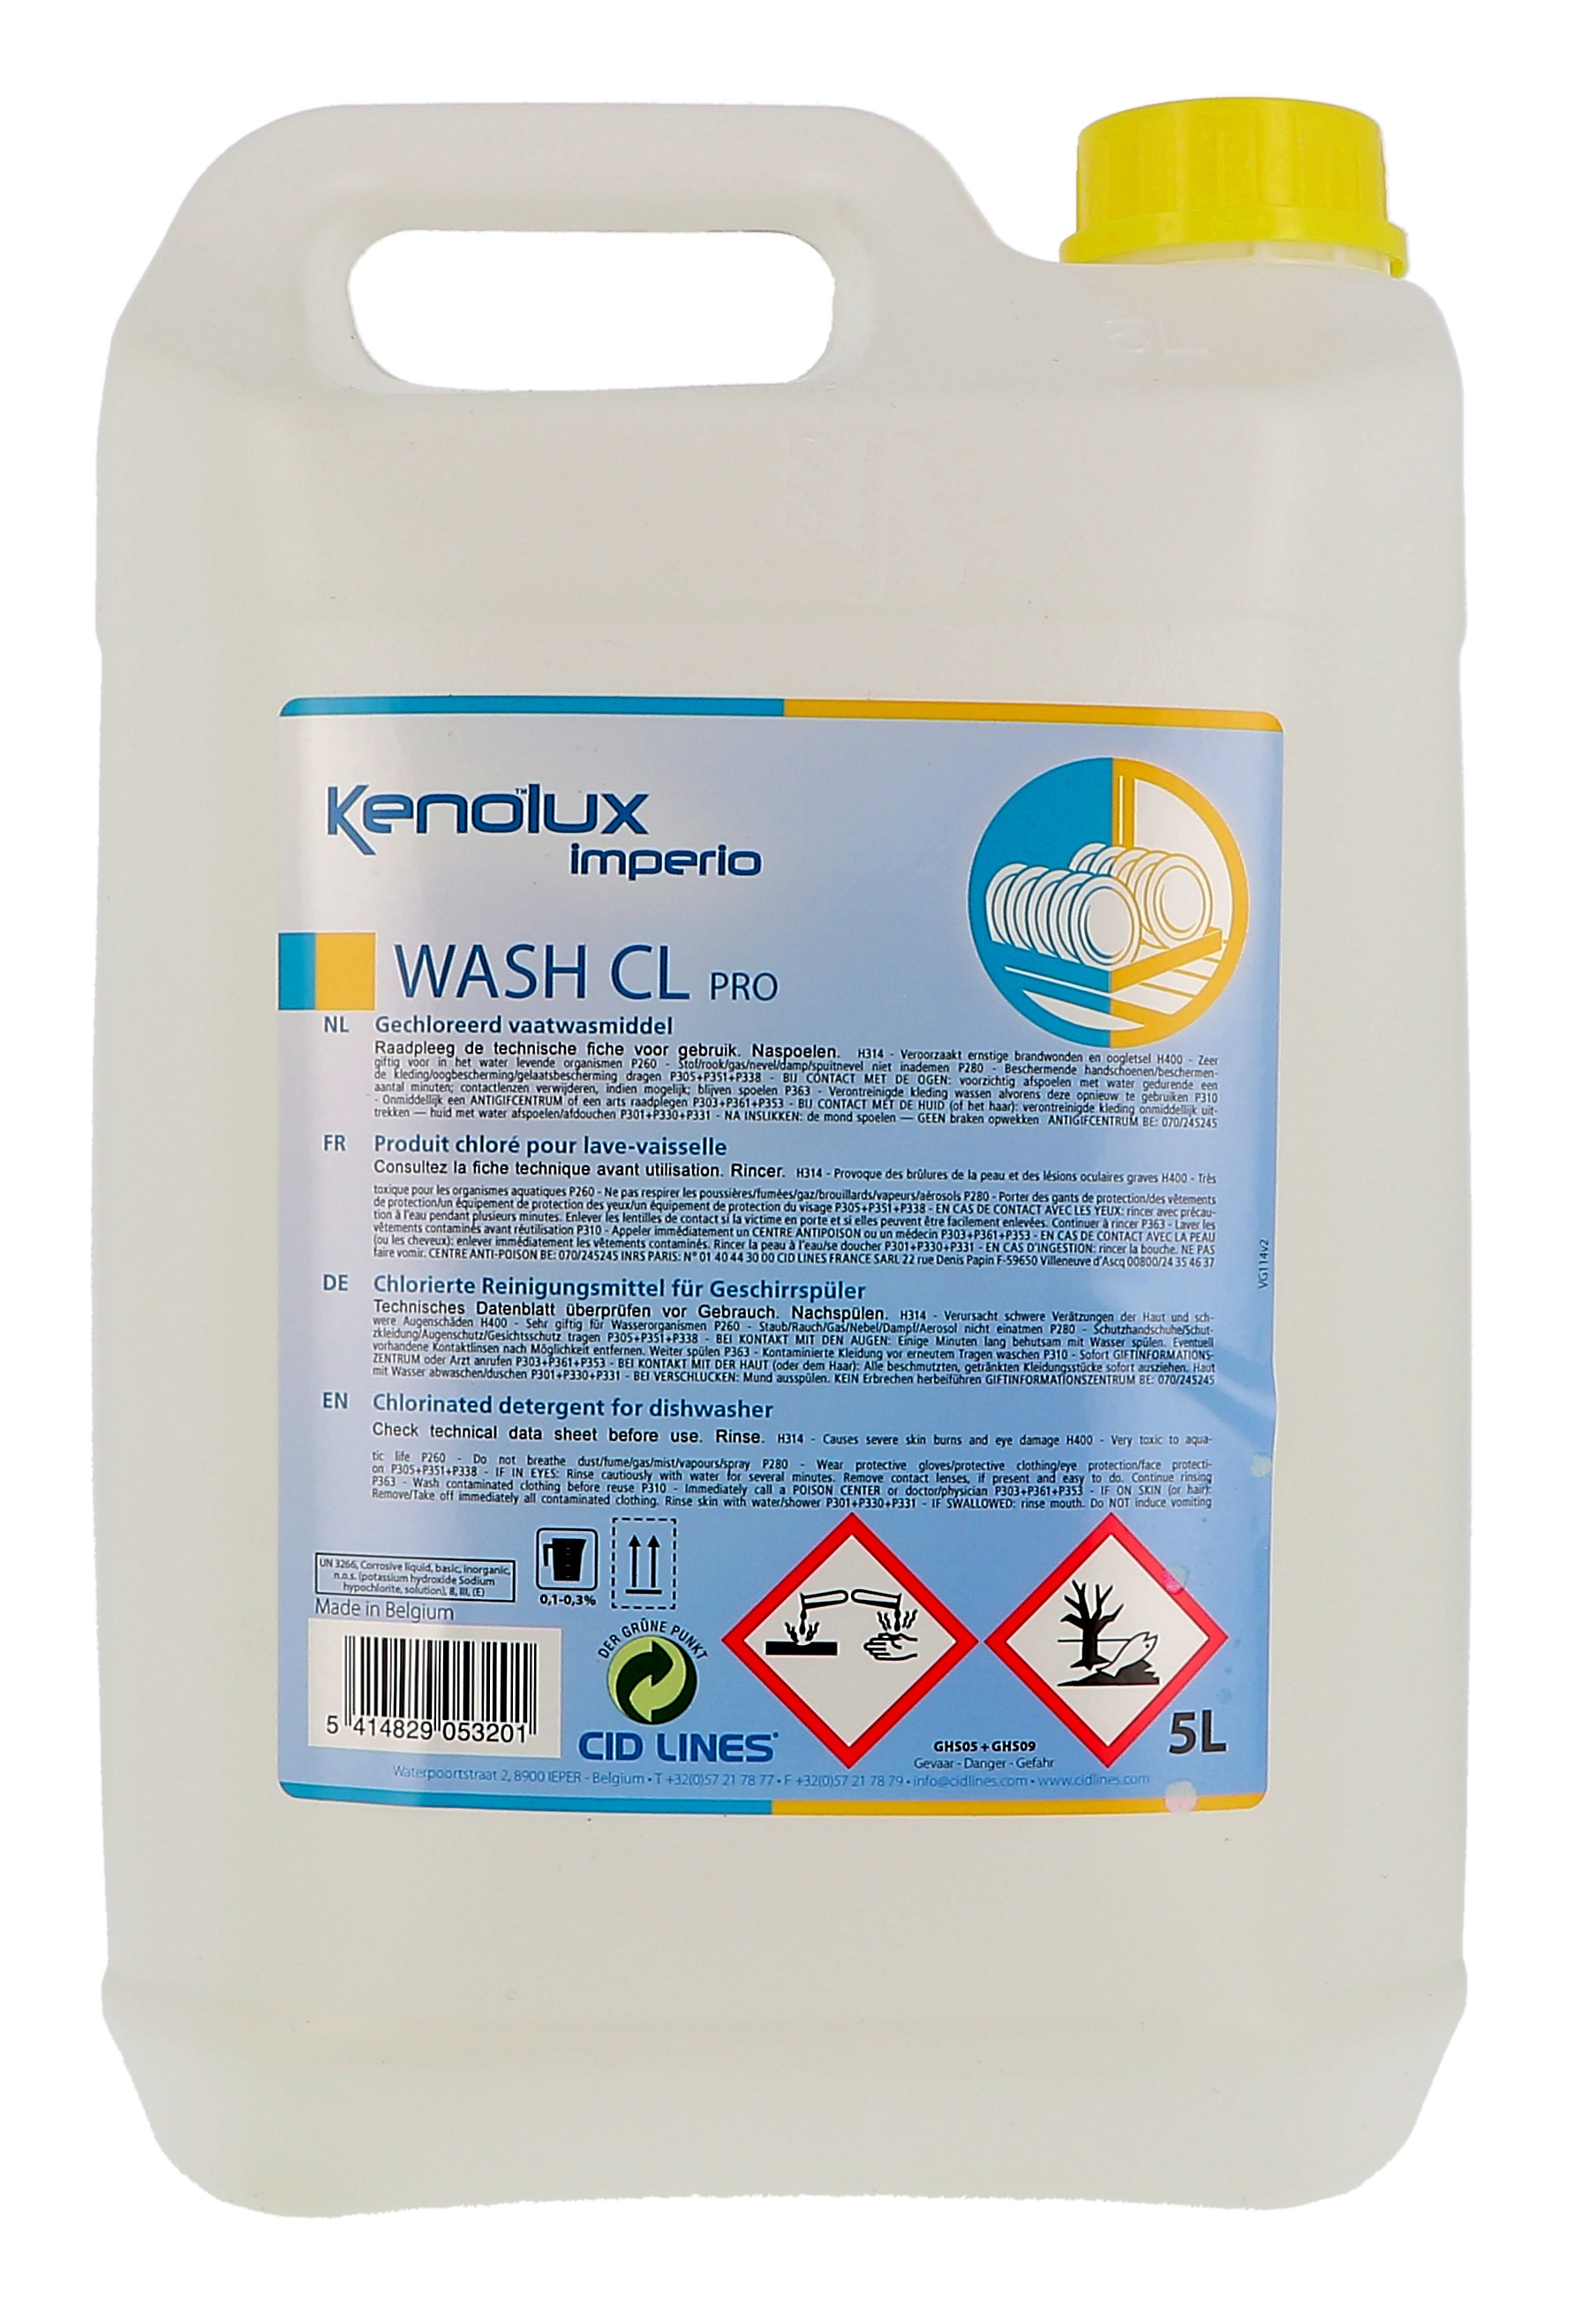 Kenolux Imperio Wash CL Pro 5L liquide pour lave-vaisselle chloré Cid Lines (Vaatwasproducten)